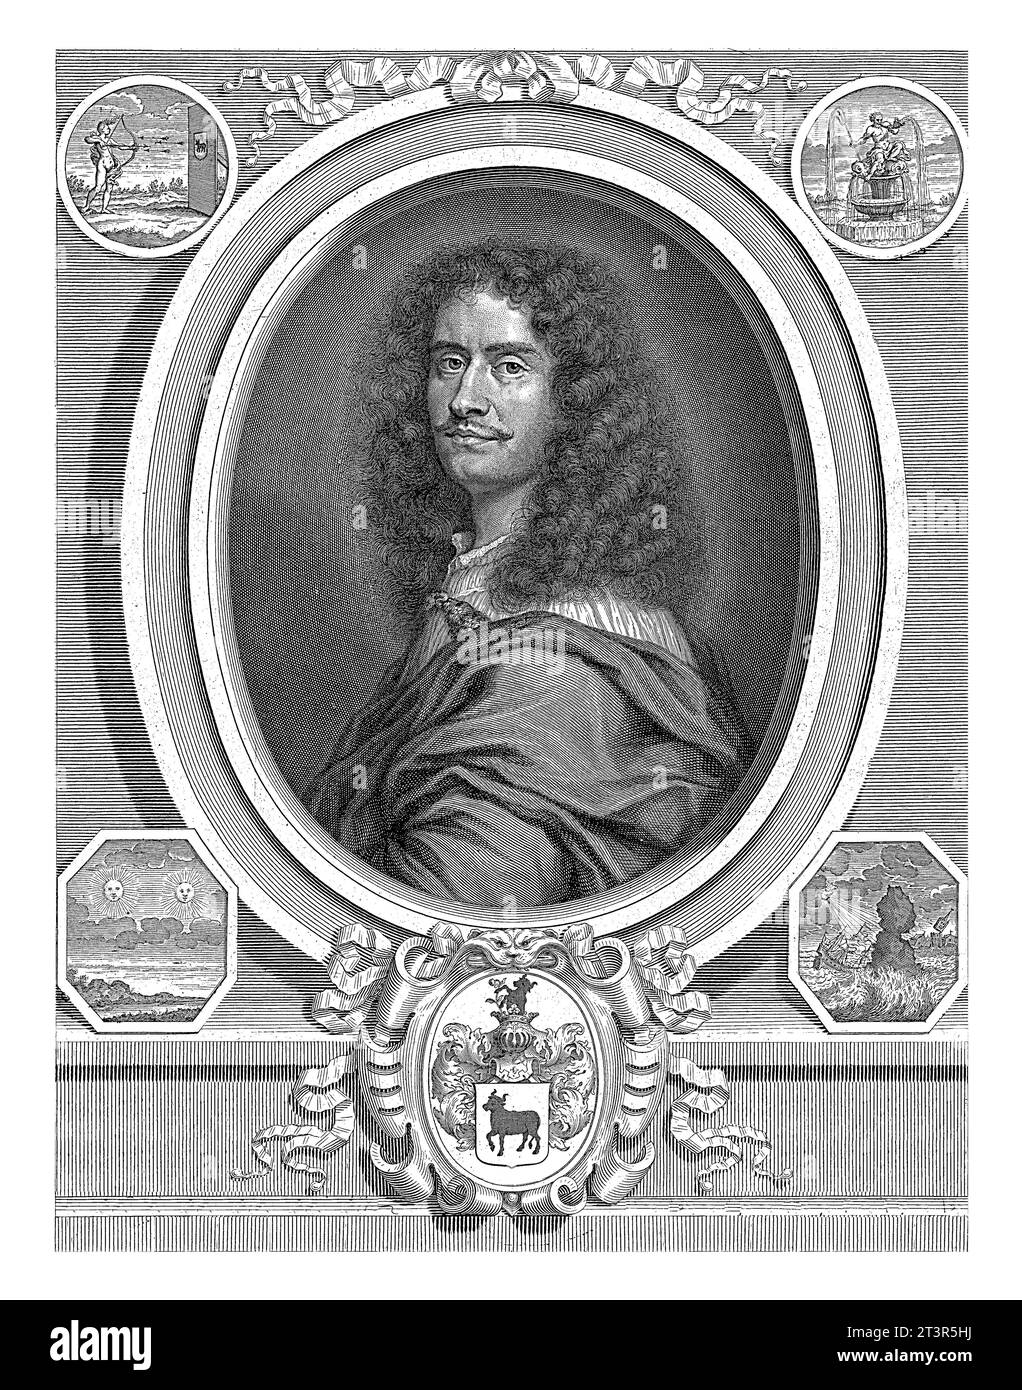 Portrait of Giuseppe Francesco Borri, Pieter van Schuppen, after Jurgen Ovens, 1675 Portrait of the alchemist, physician and prophet Giuseppe Francesc Stock Photo